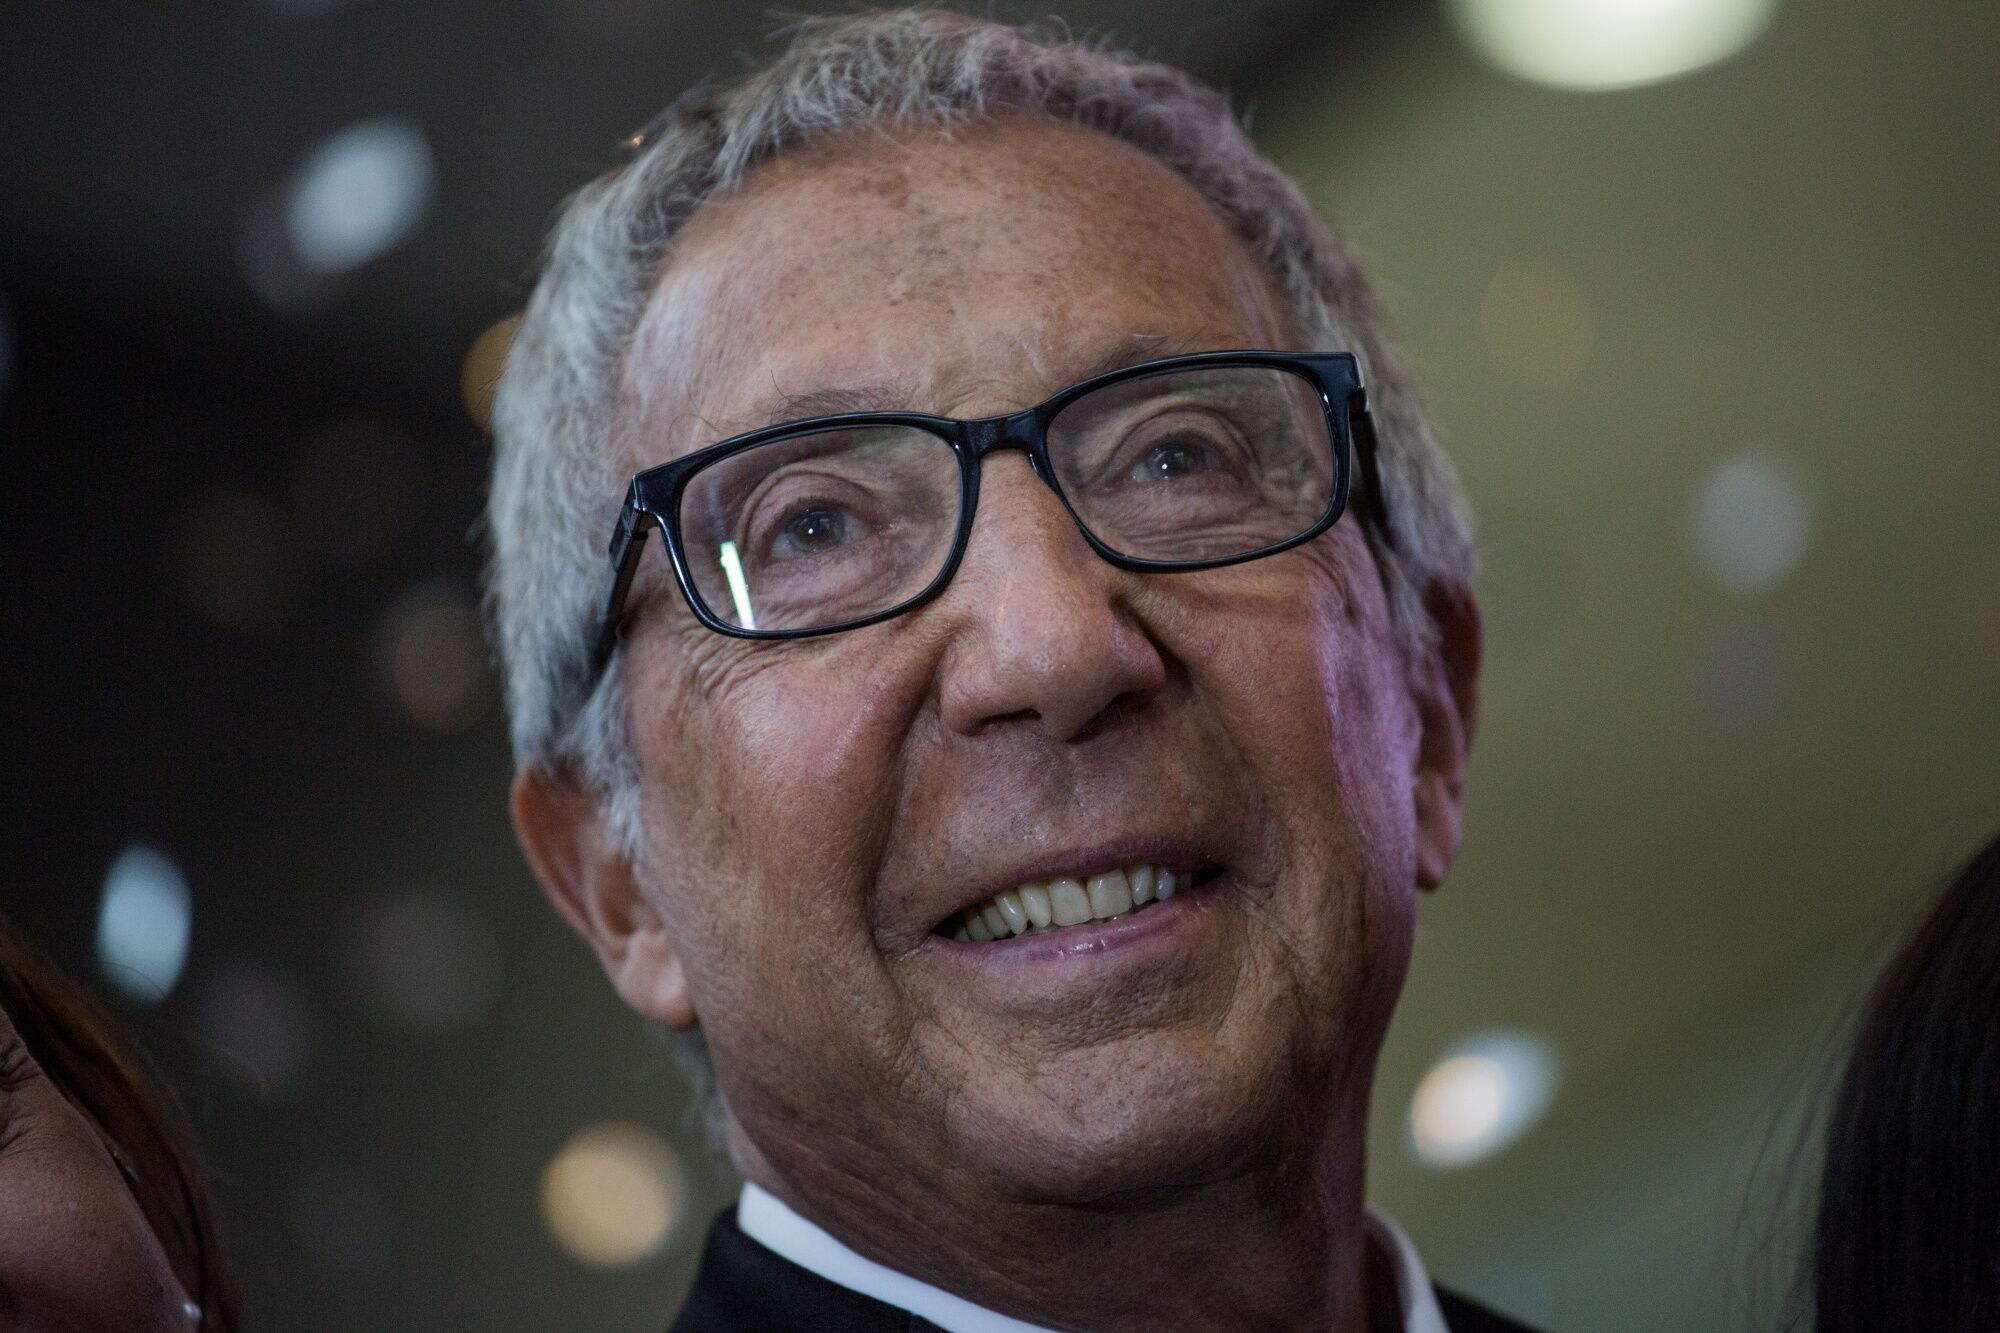 abilio diniz, billionaire behind brazil superstores, dies at 87